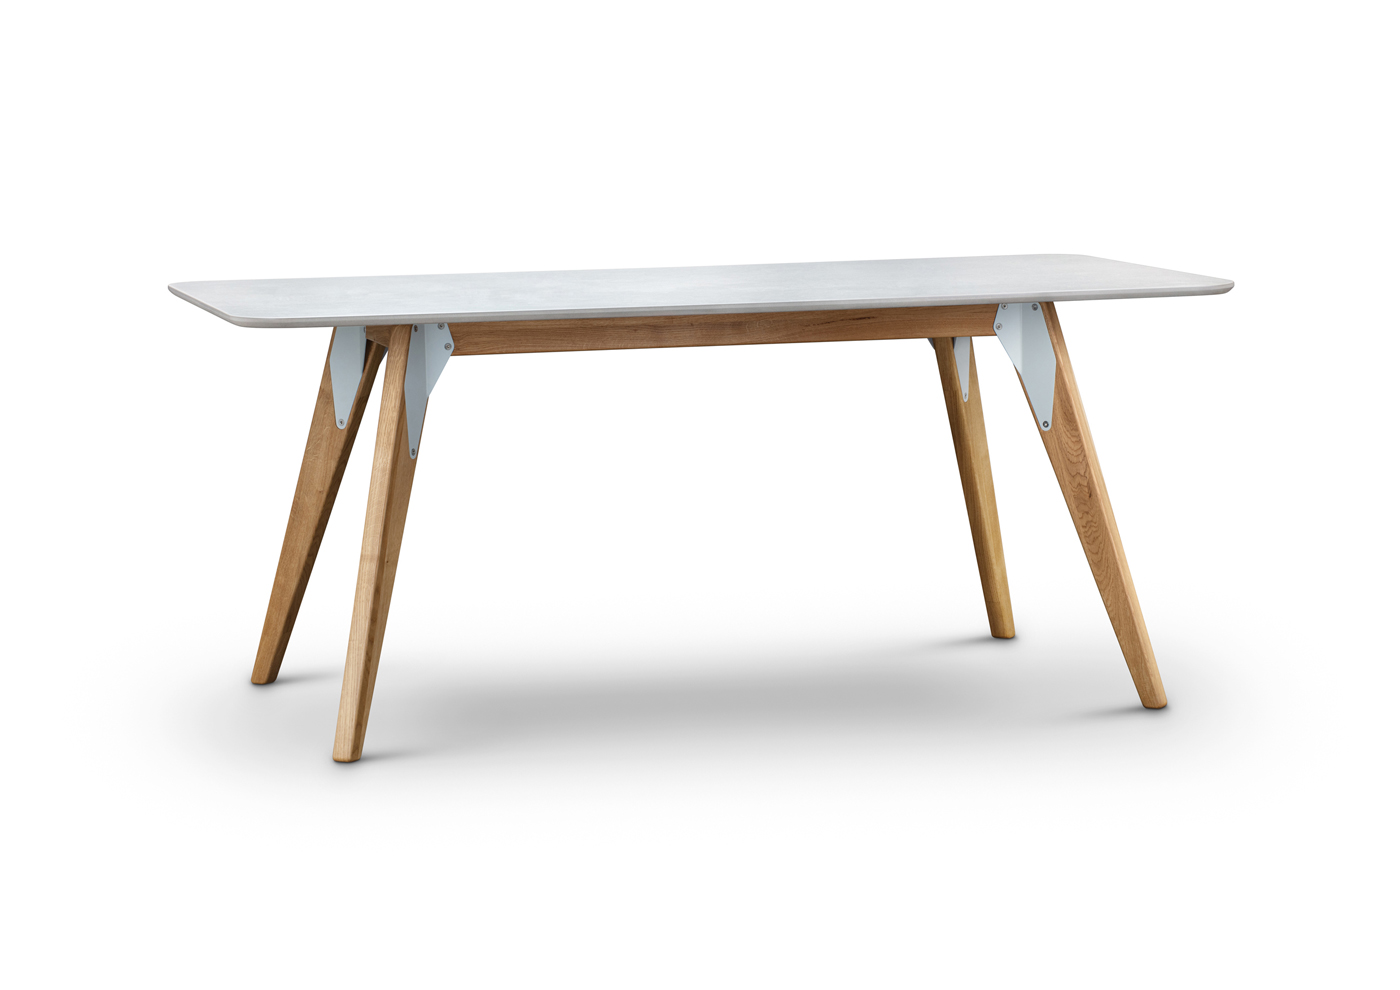 Magnolia Table - view3 - Davide Mezzasalma - Furniture design - Berlin